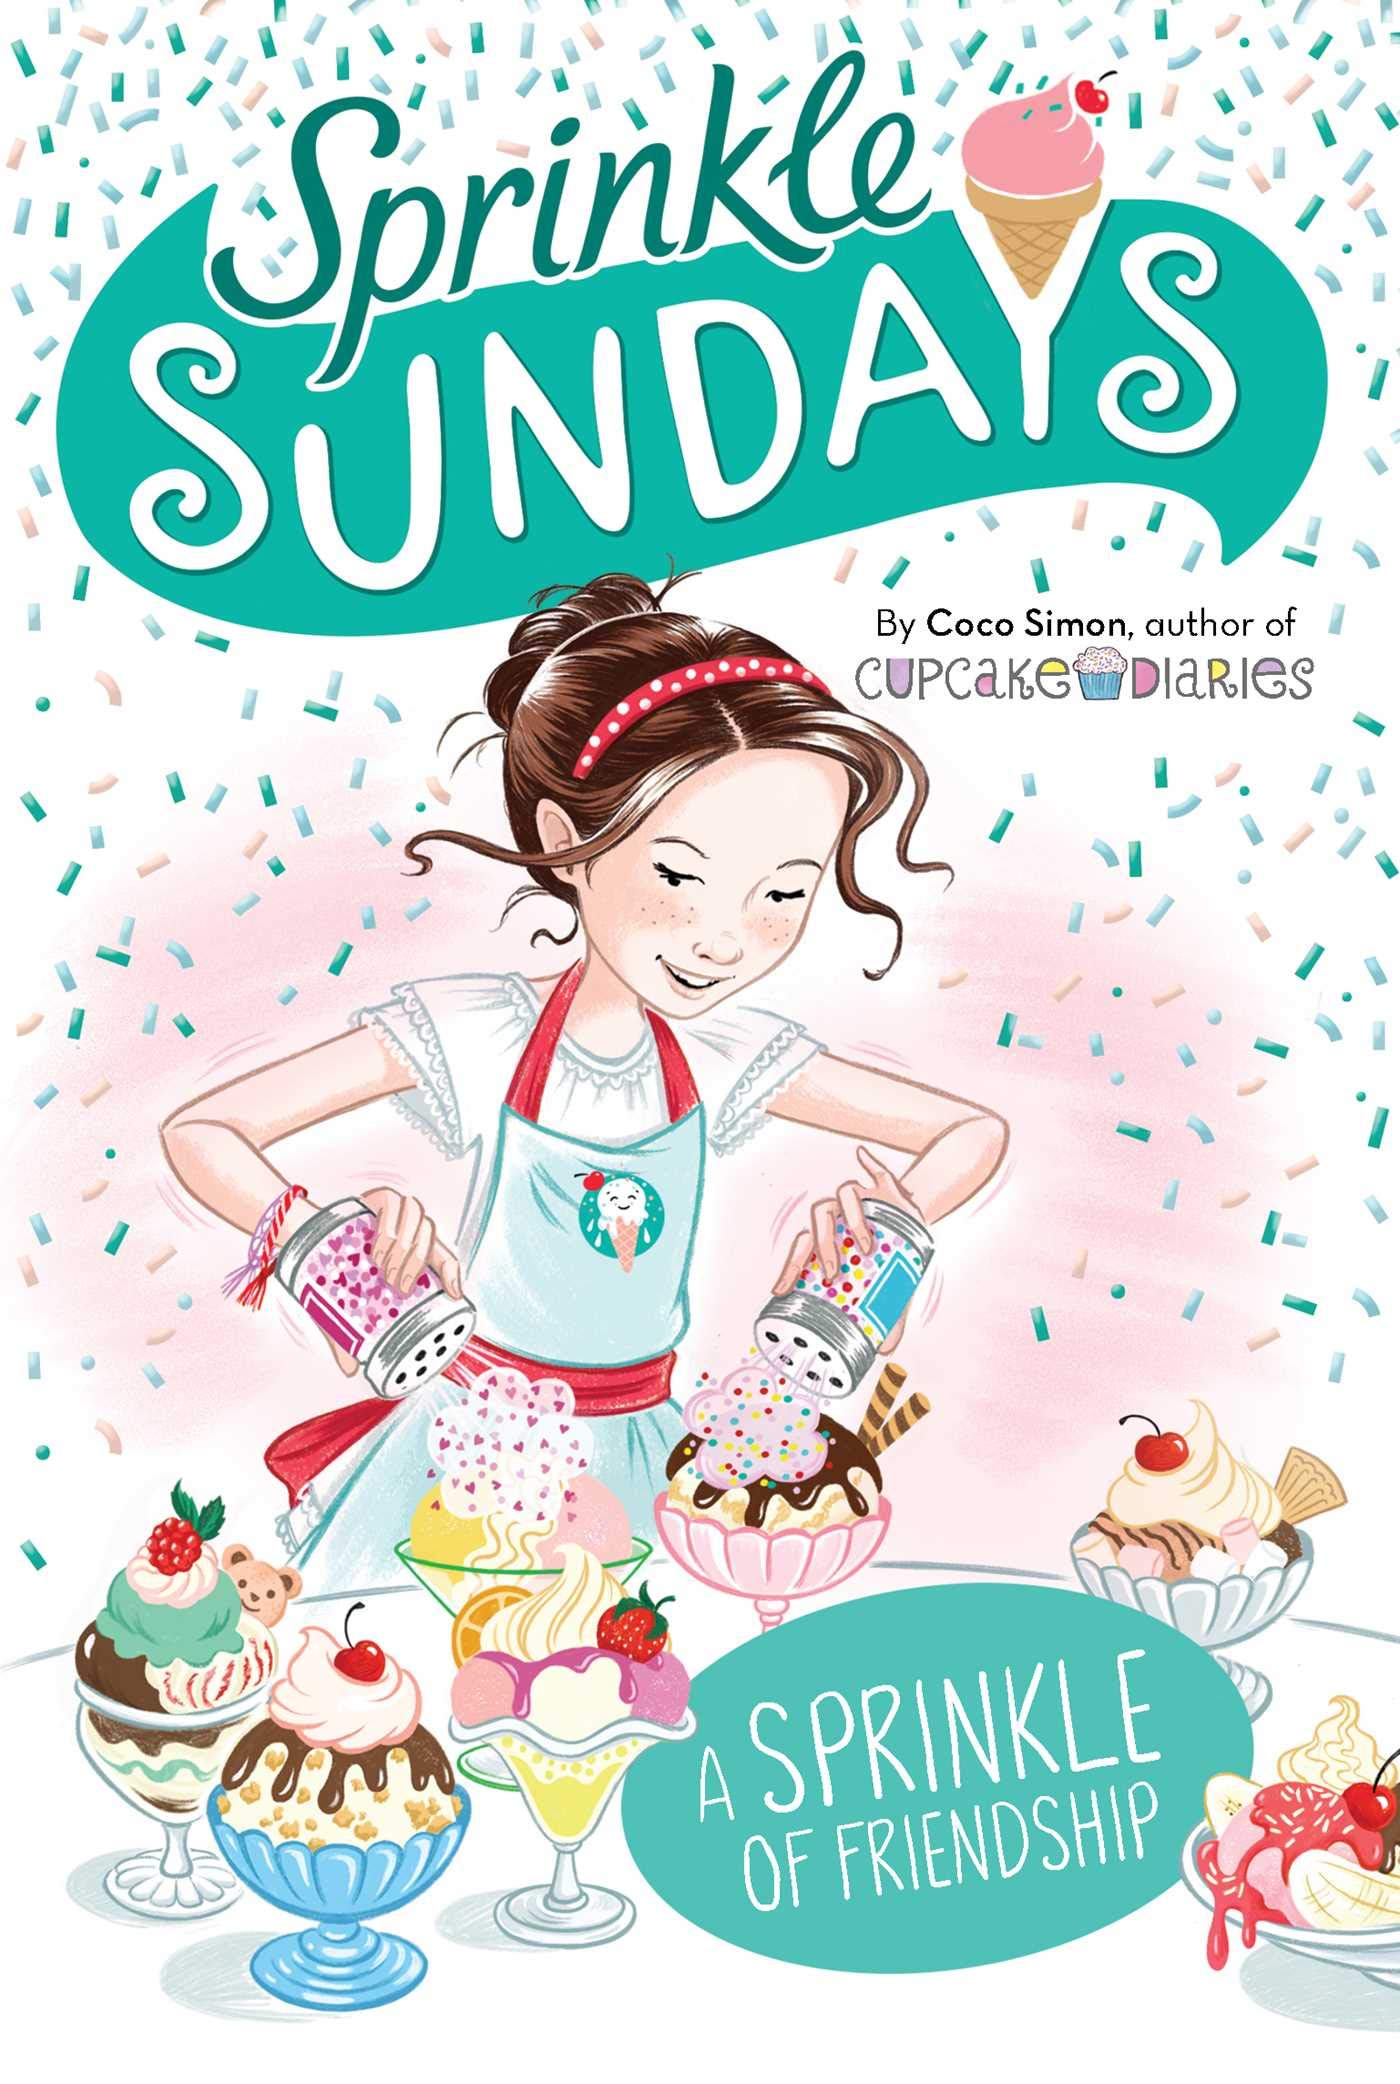 Sprinkle Sundays - A Sprinkle of Friendship